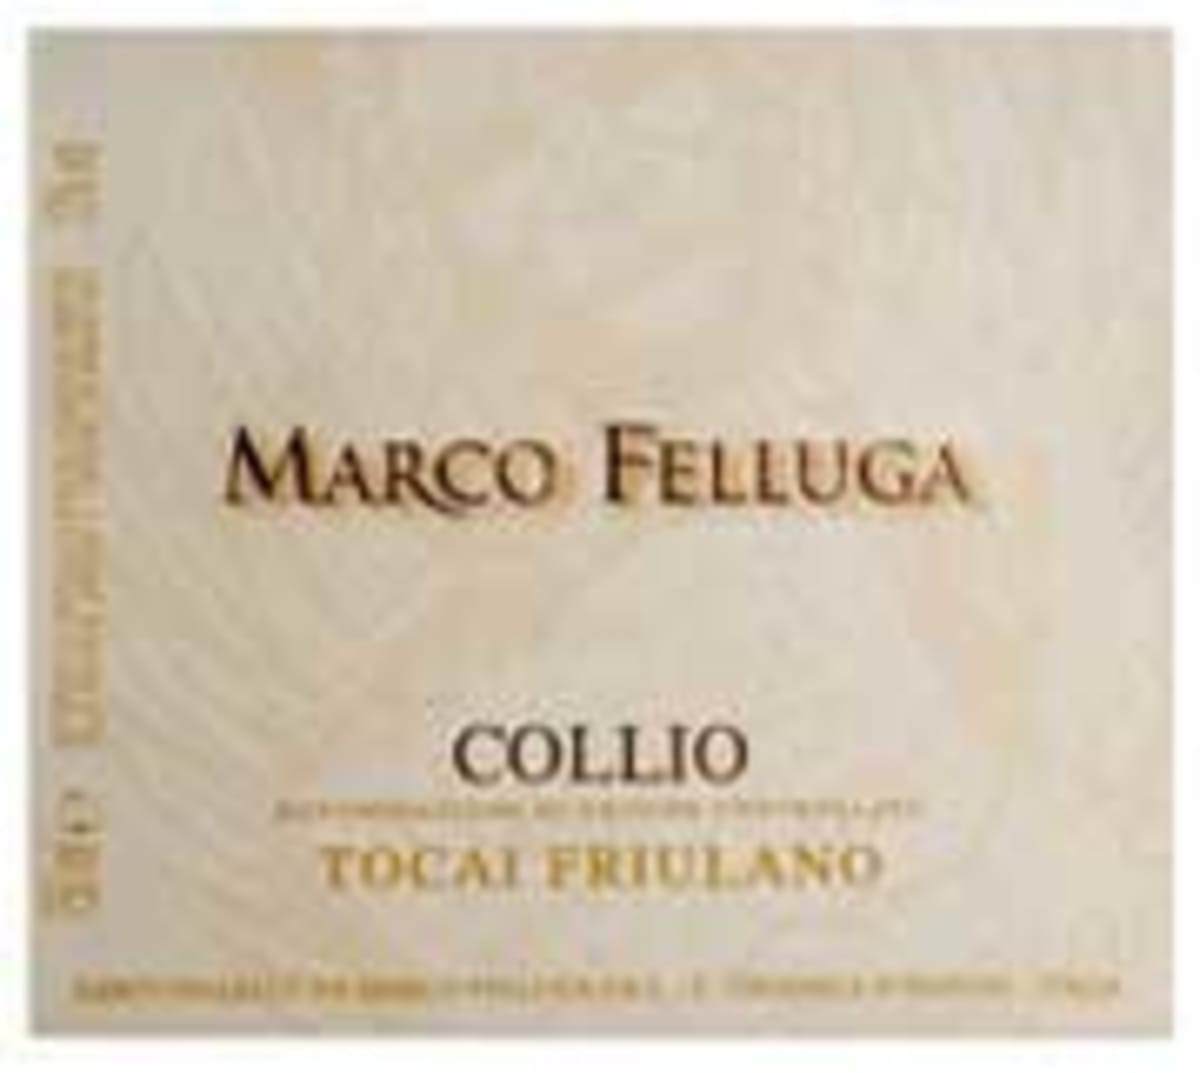 Marco Felluga Tocai Friulano 2005 Front Label